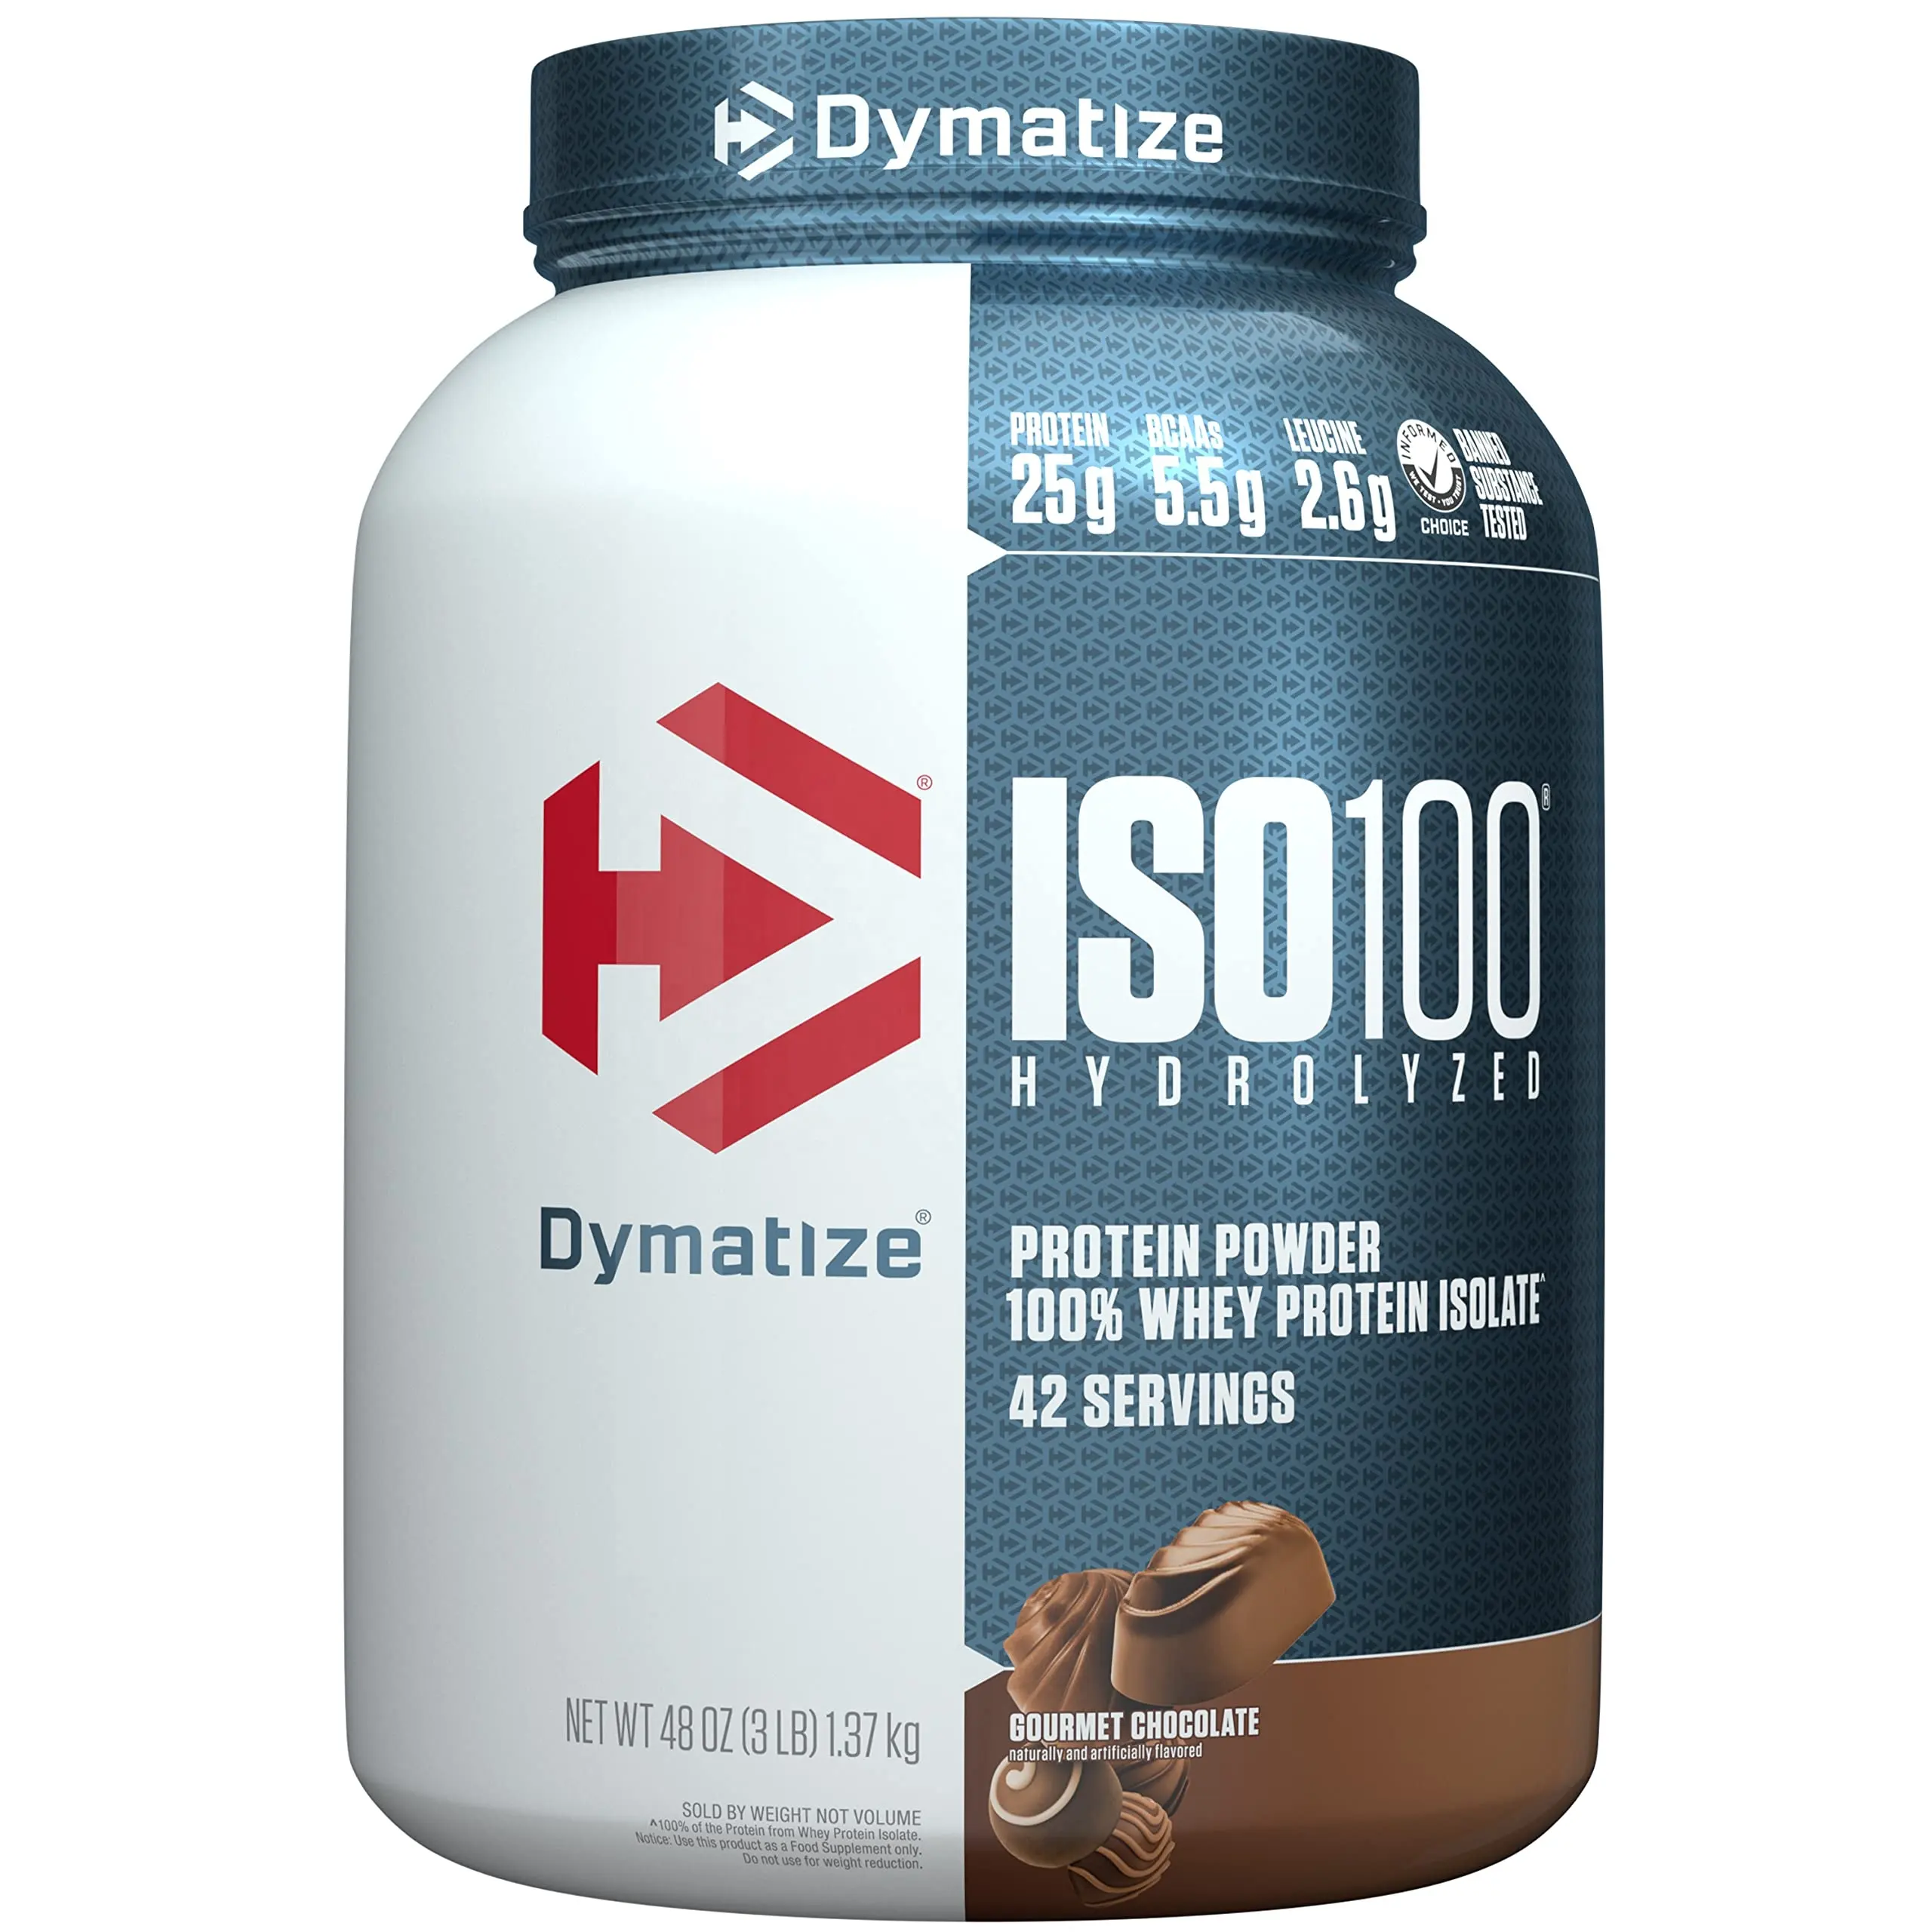 Bolsa de proteína hidratada dymatize is100, 100% de proteína isolada de trigo